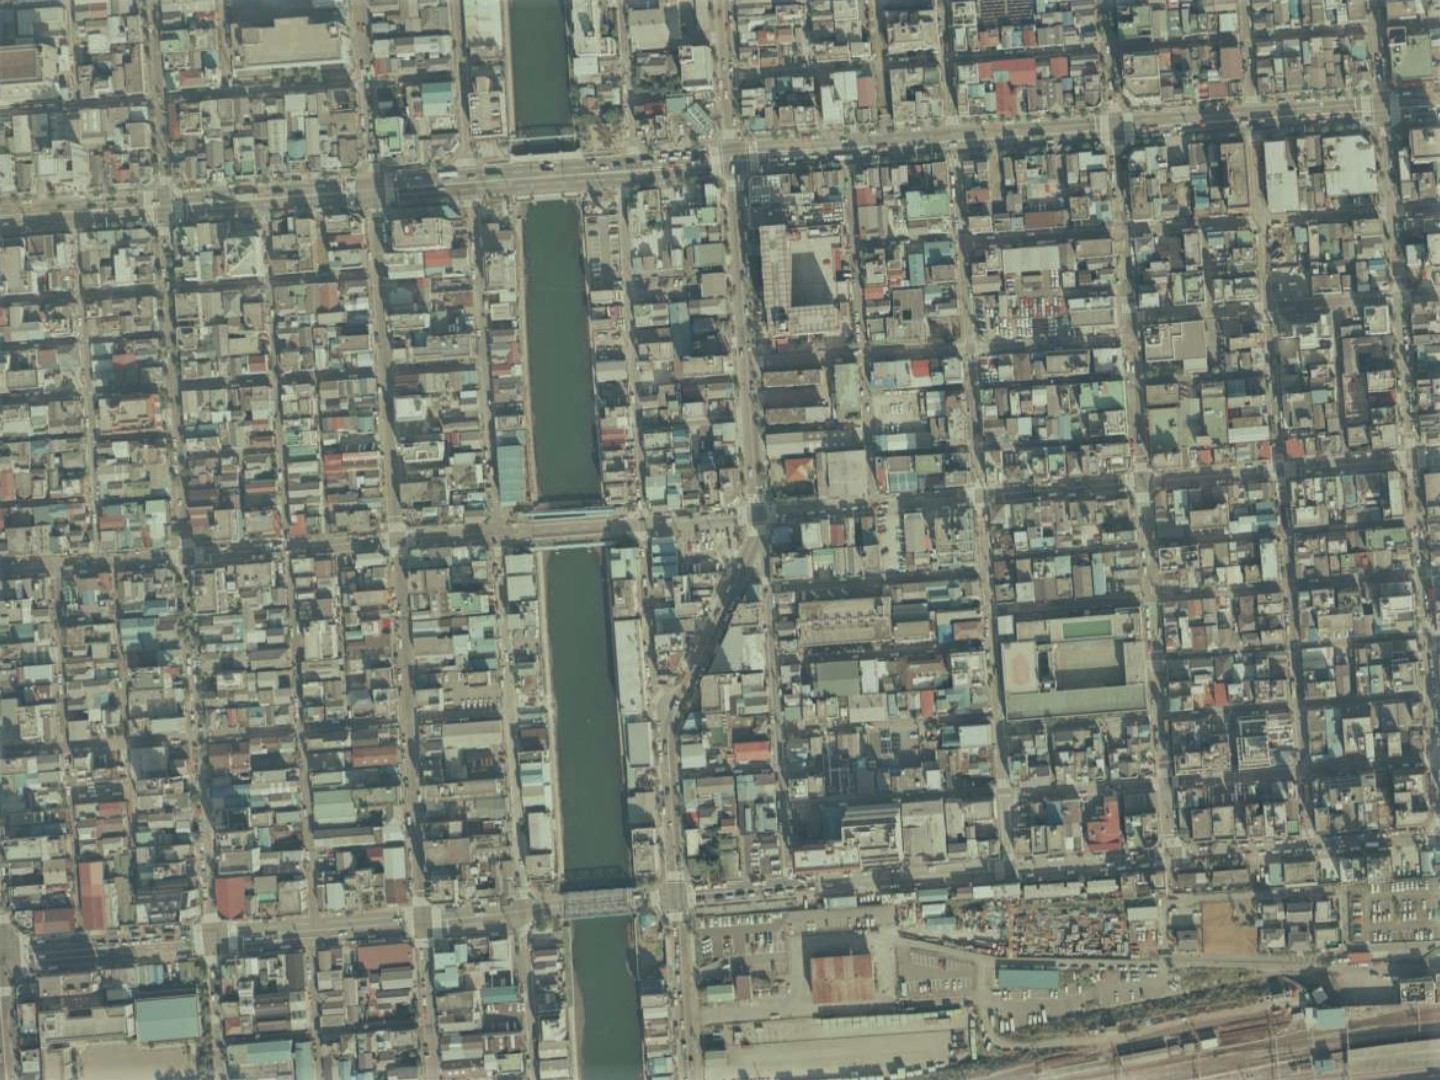 勝山藩下屋敷跡付近、昭和59年撮影空中写真（国土地理院Webサイトより、CKT843-C10-37〔部分〕） (の画像。